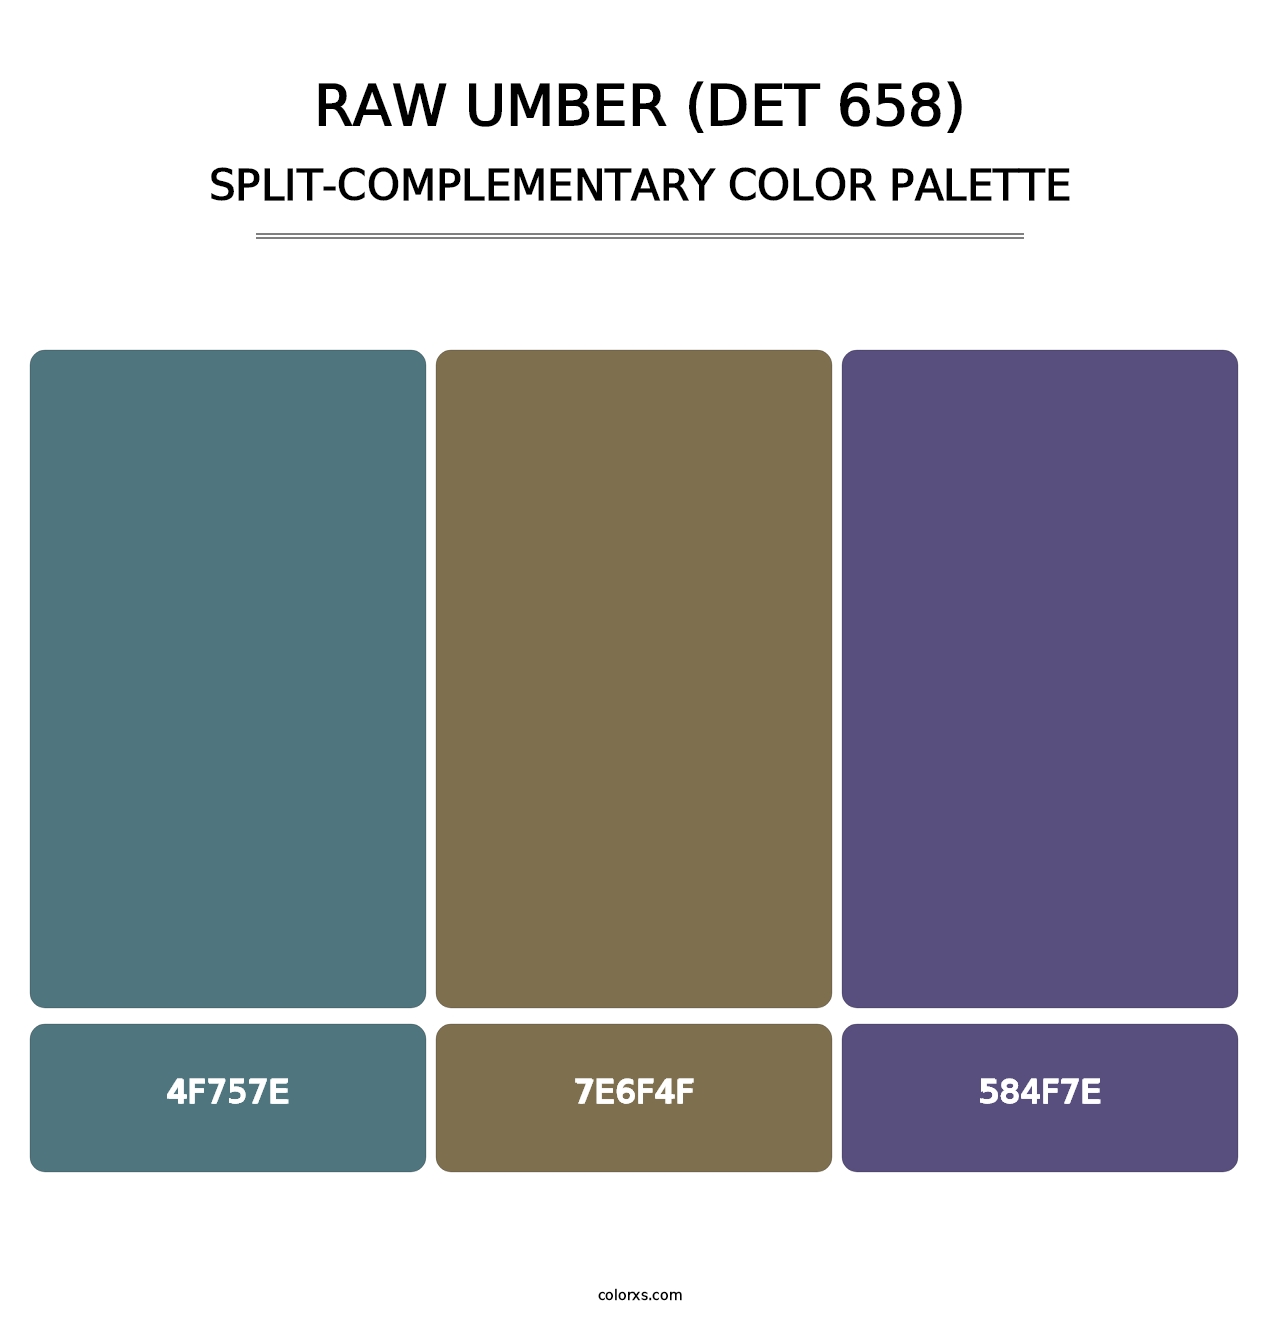 Raw Umber (DET 658) - Split-Complementary Color Palette